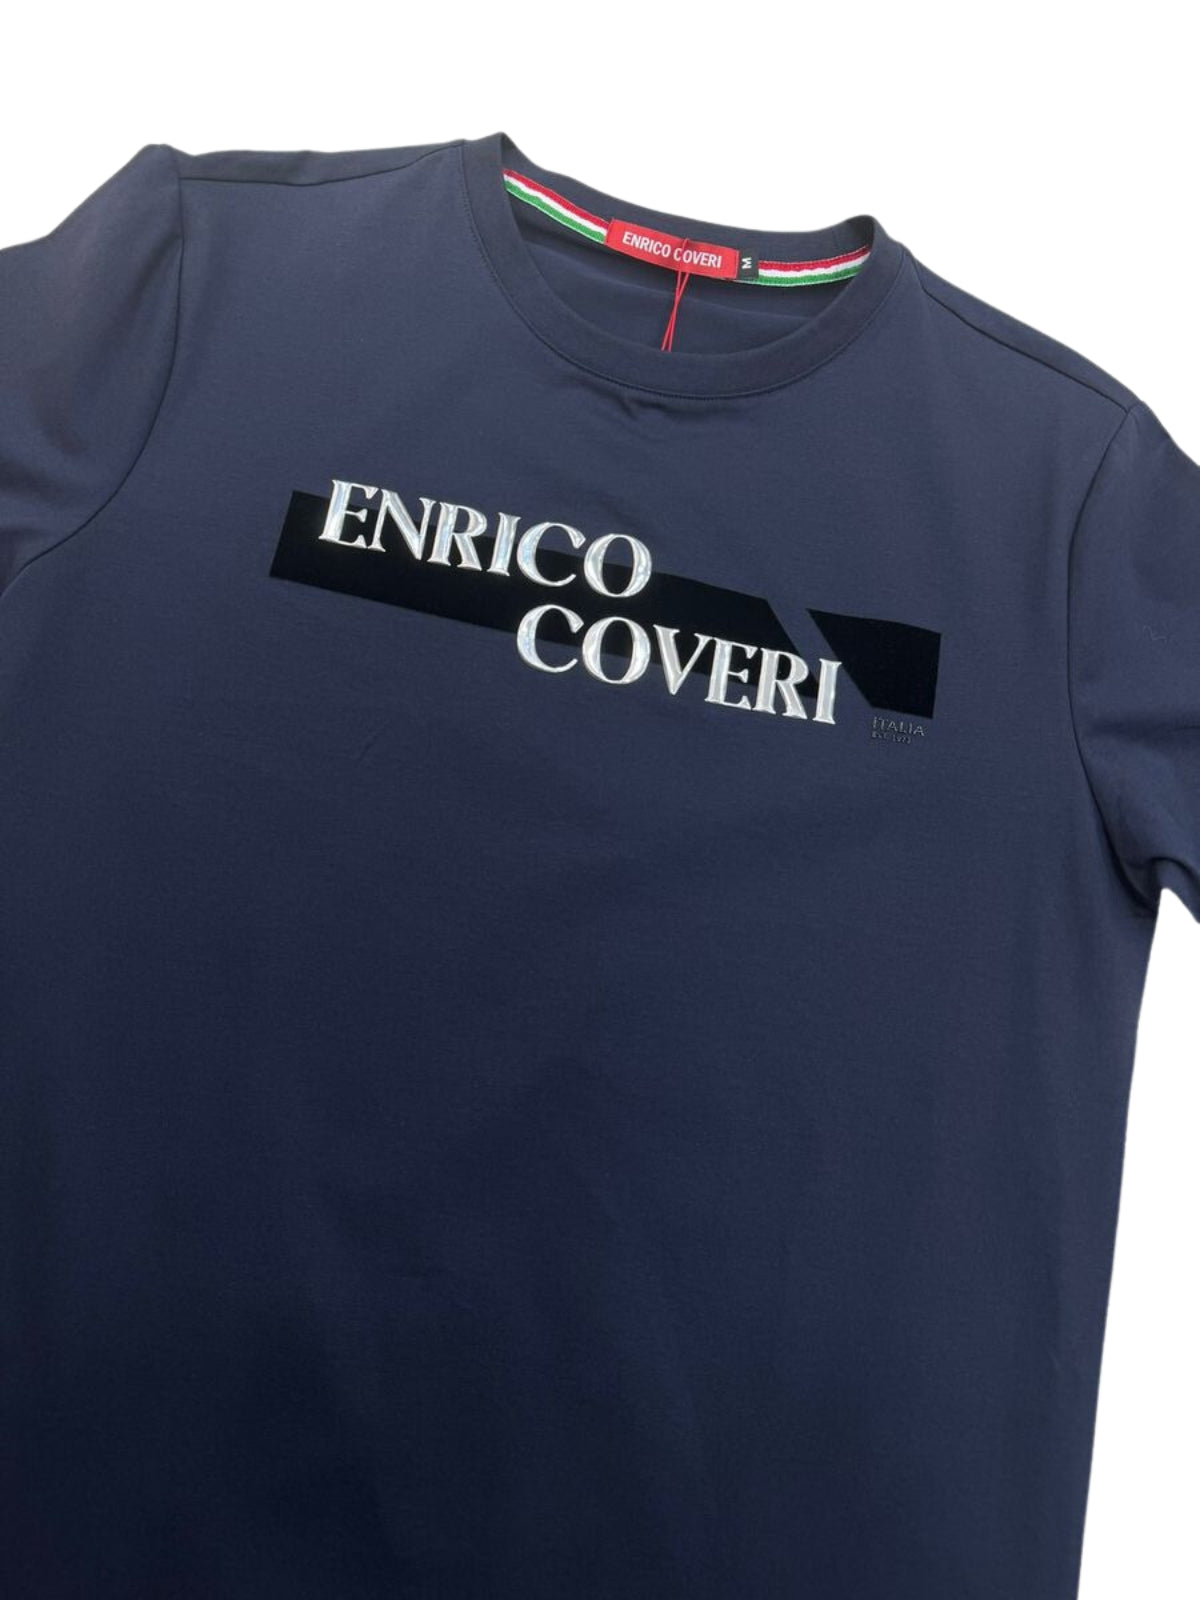 Enrico T-Shirt Center Logo Navy